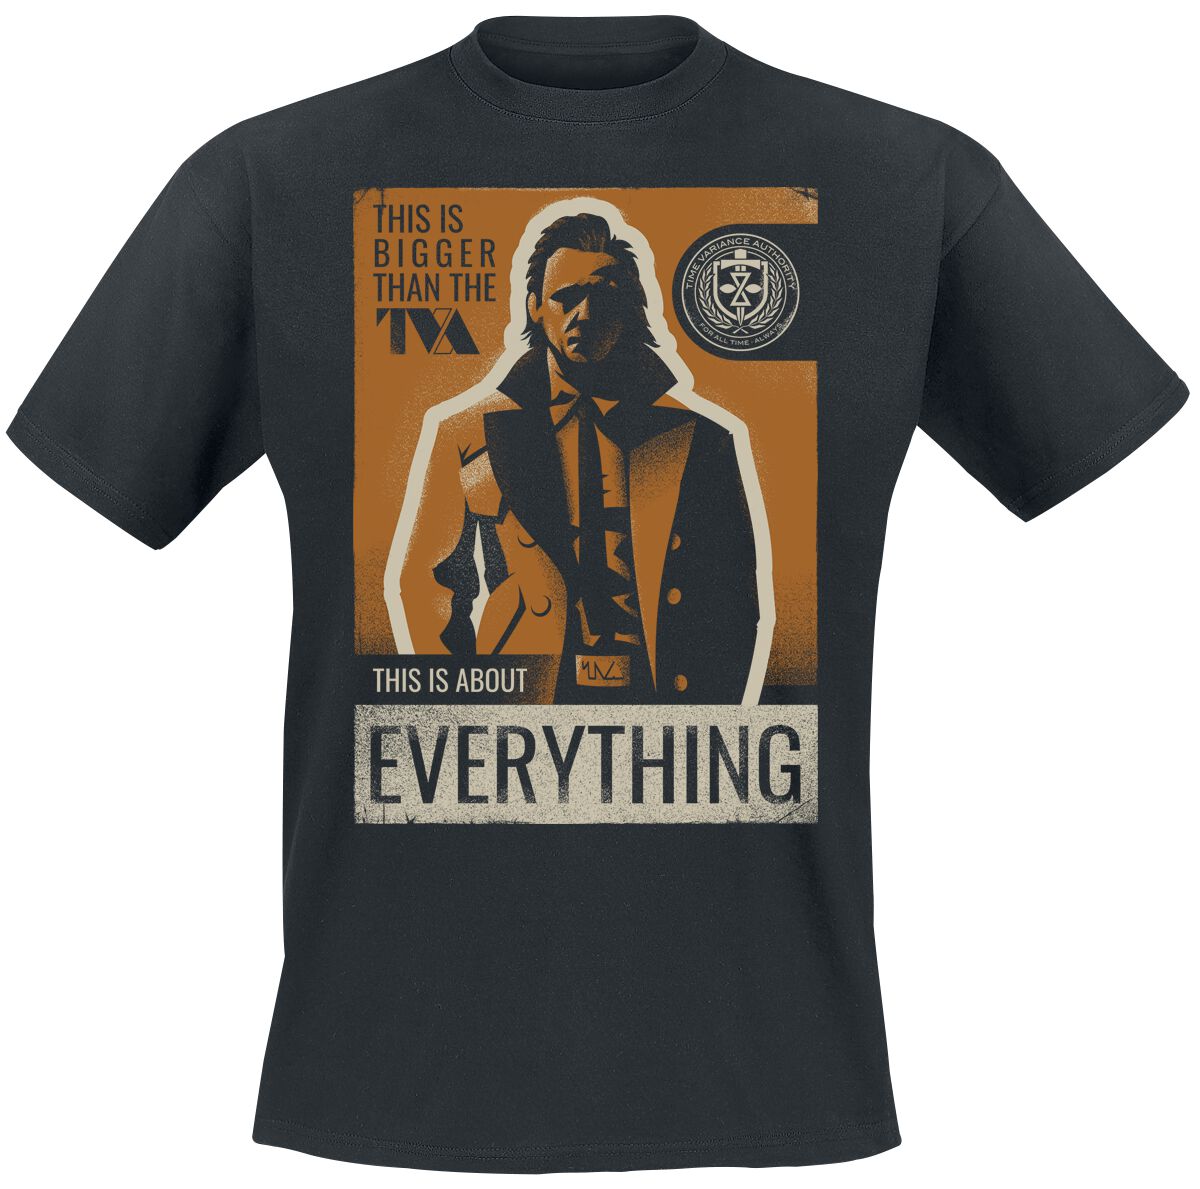 Loki - Marvel T-Shirt - About Everything - S bis XXL - für Männer - Größe XXL - schwarz  - EMP exklusives Merchandise!